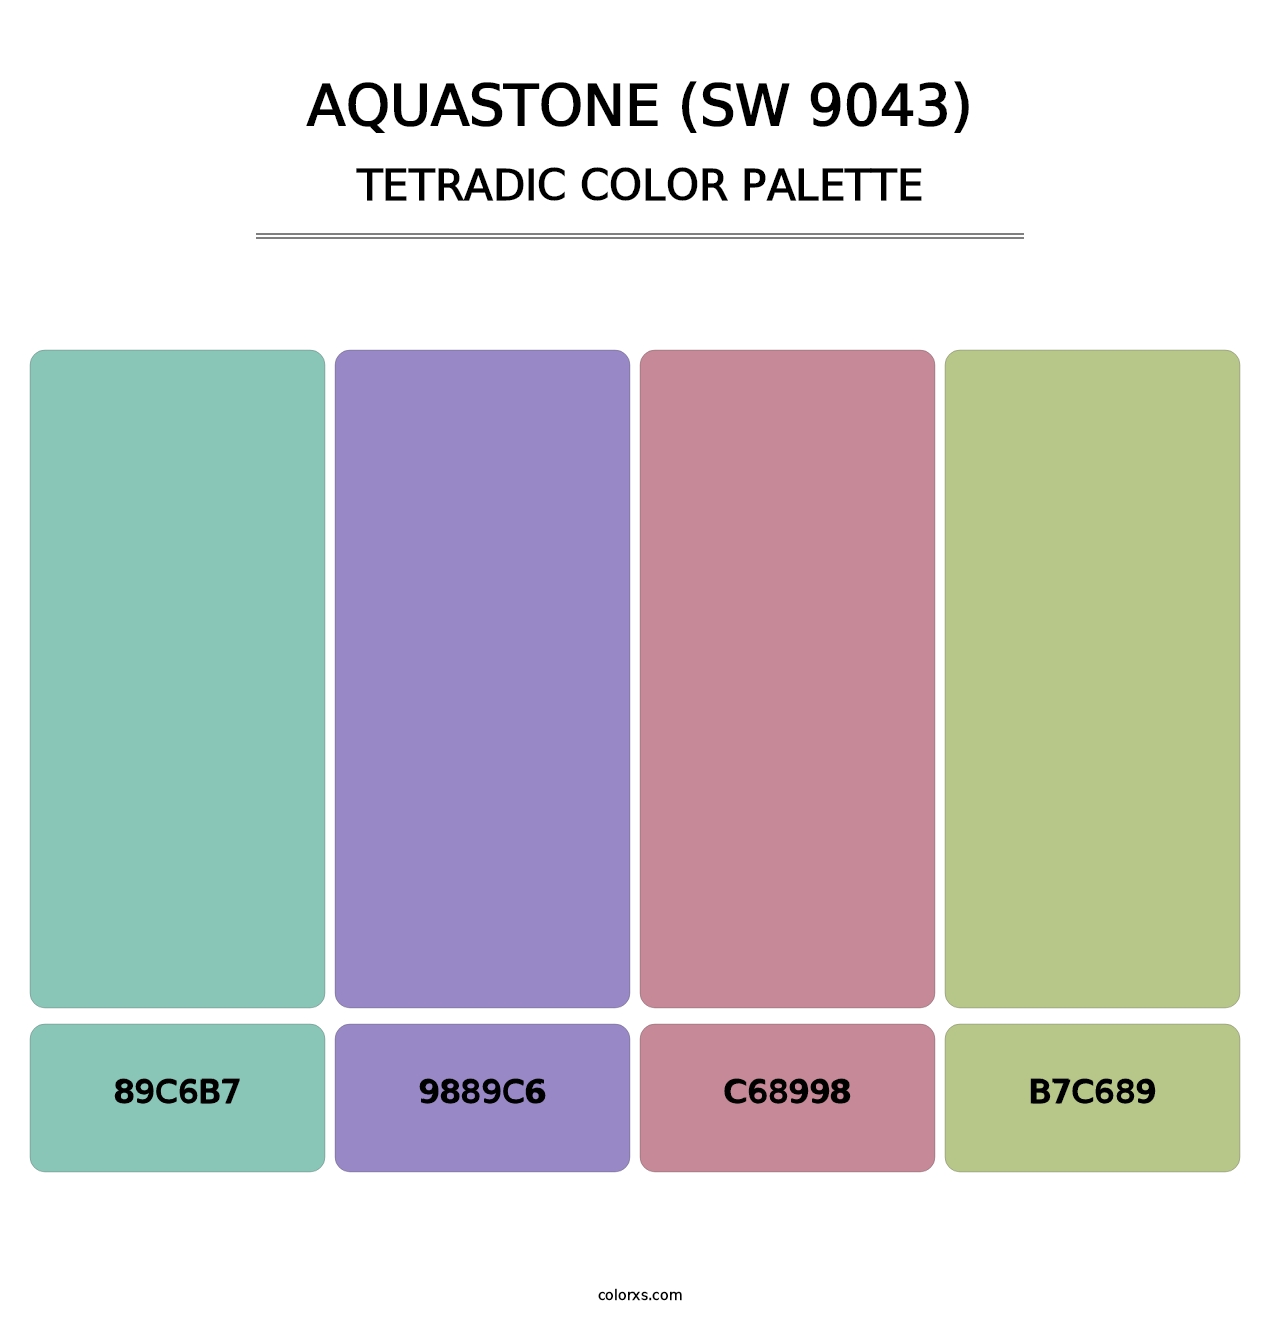 Aquastone (SW 9043) - Tetradic Color Palette